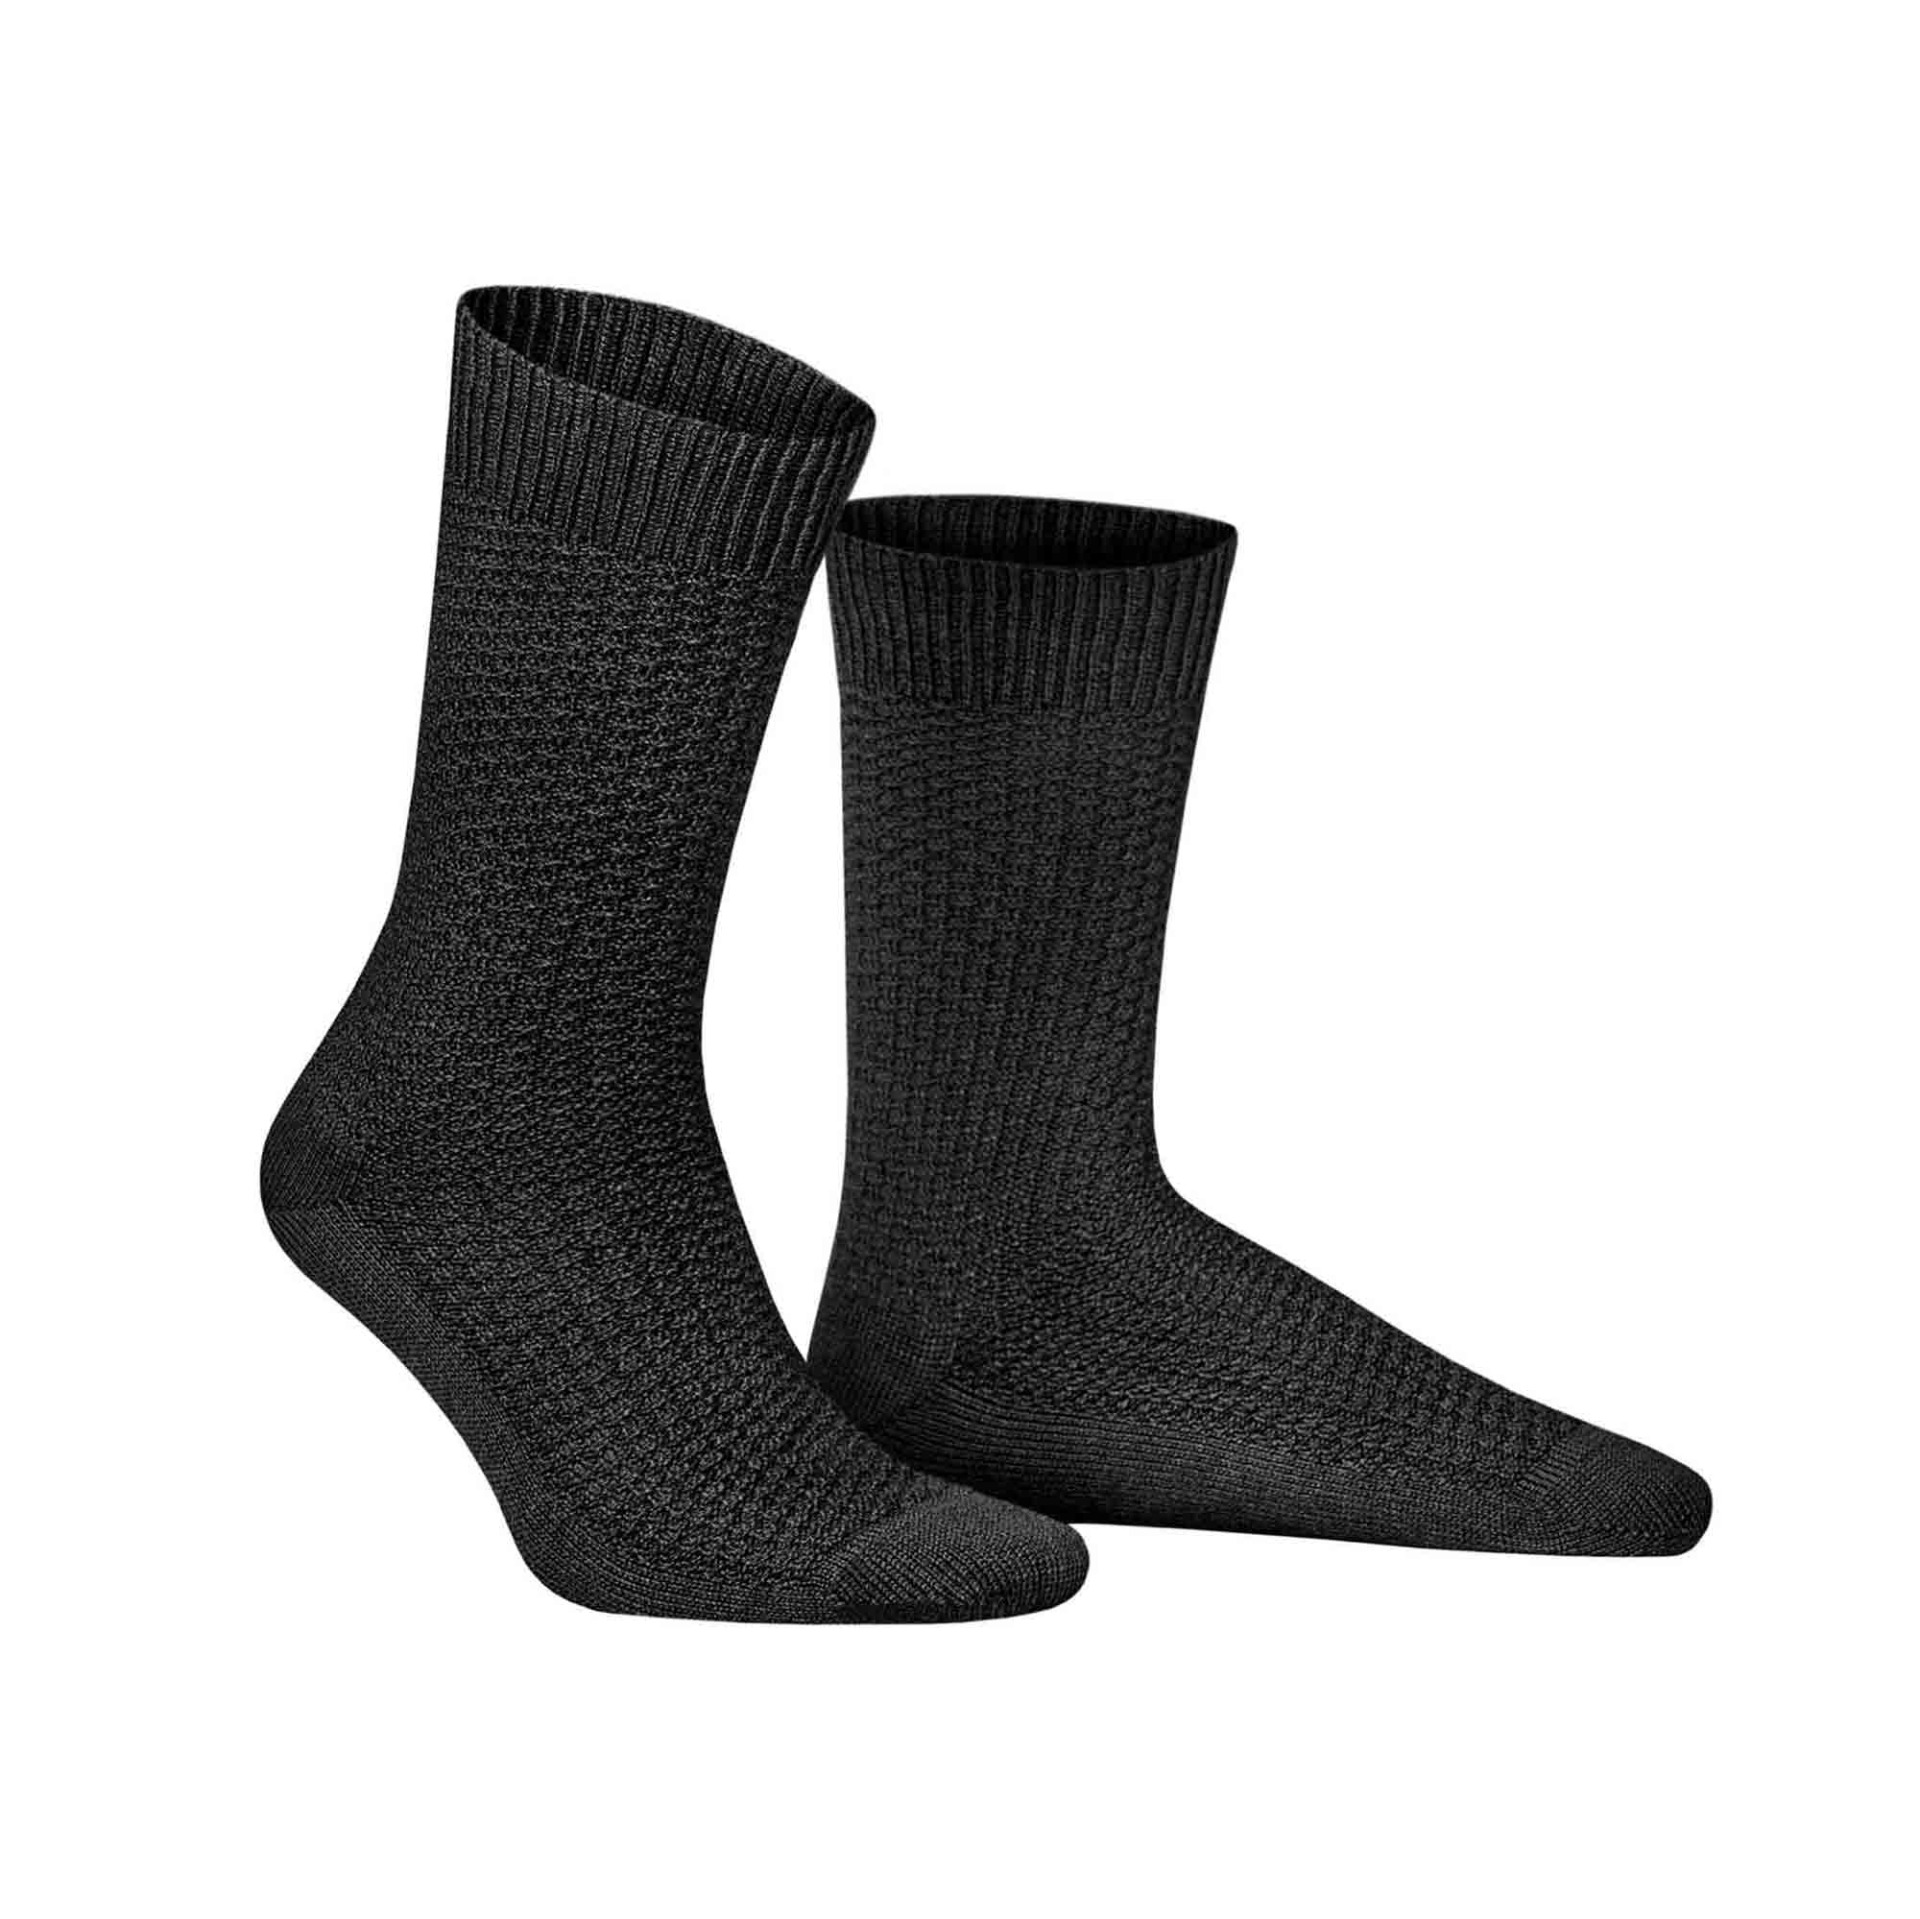 HUDSON Herren PIQUE -  39/42 - Socken mit moderner Pique-Struktur - Black (Schwarz)